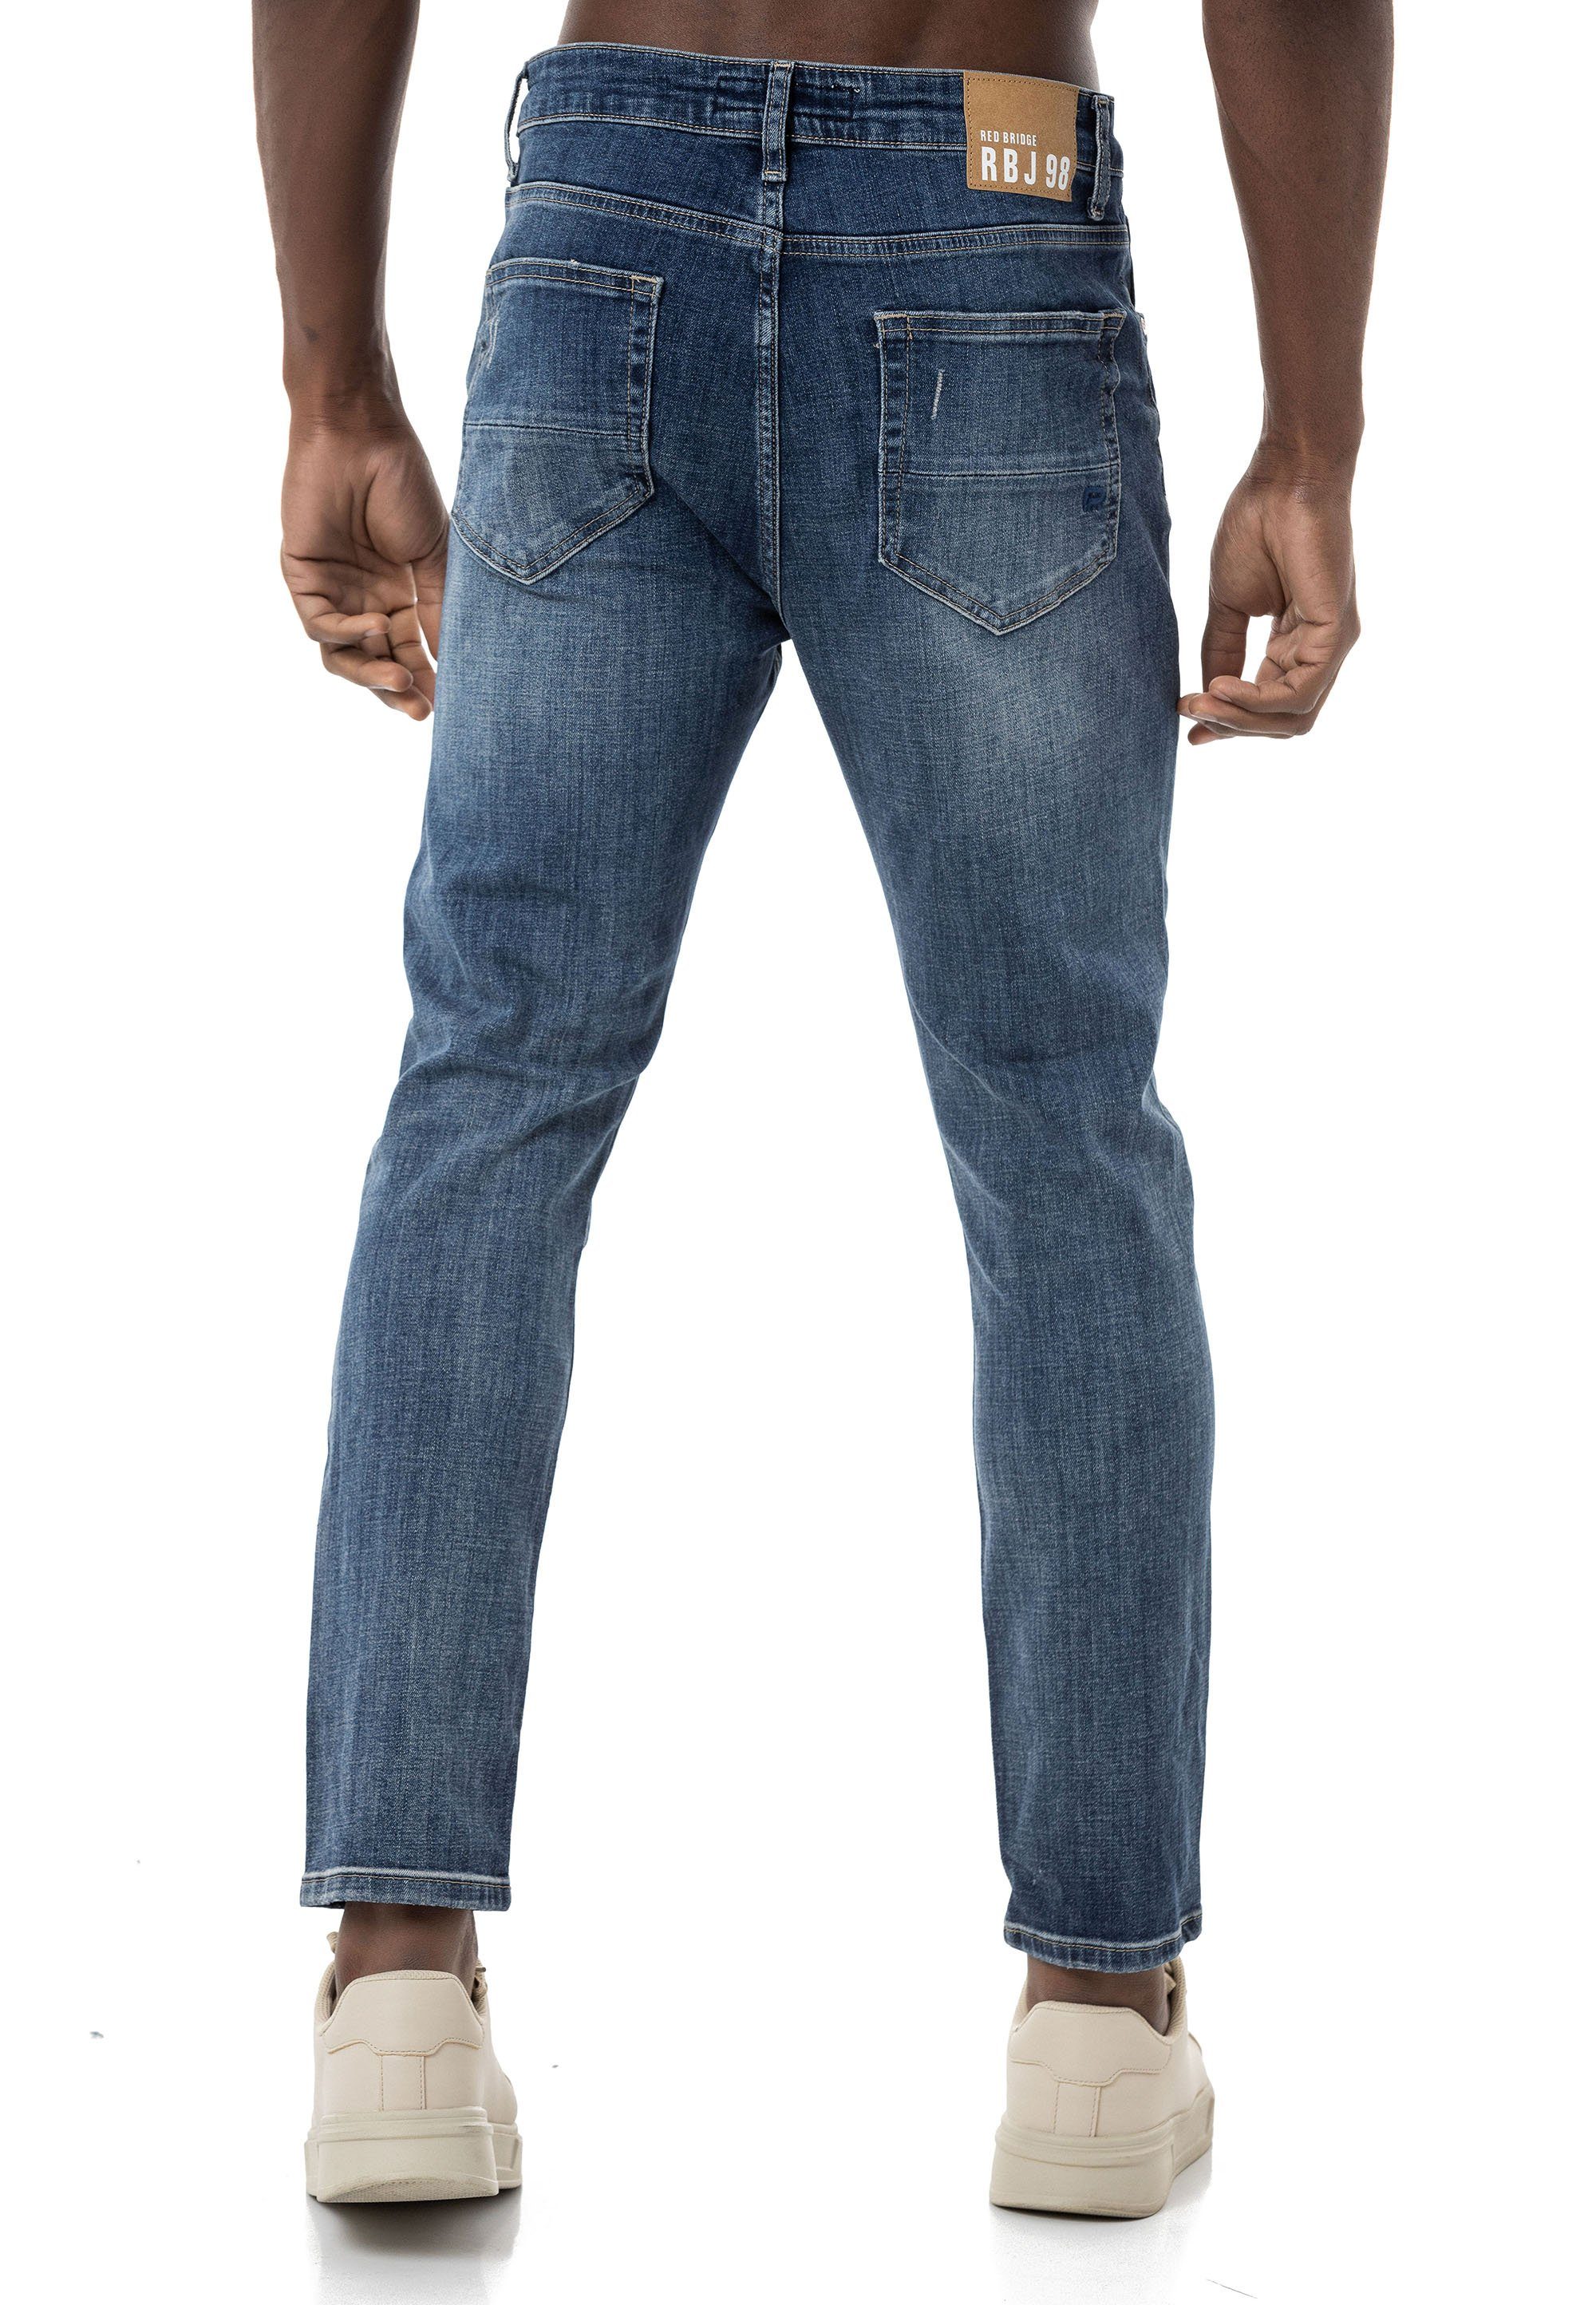 RedBridge Destroyed-Jeans lässige Denim Blau 5-Pocket-Style Hose